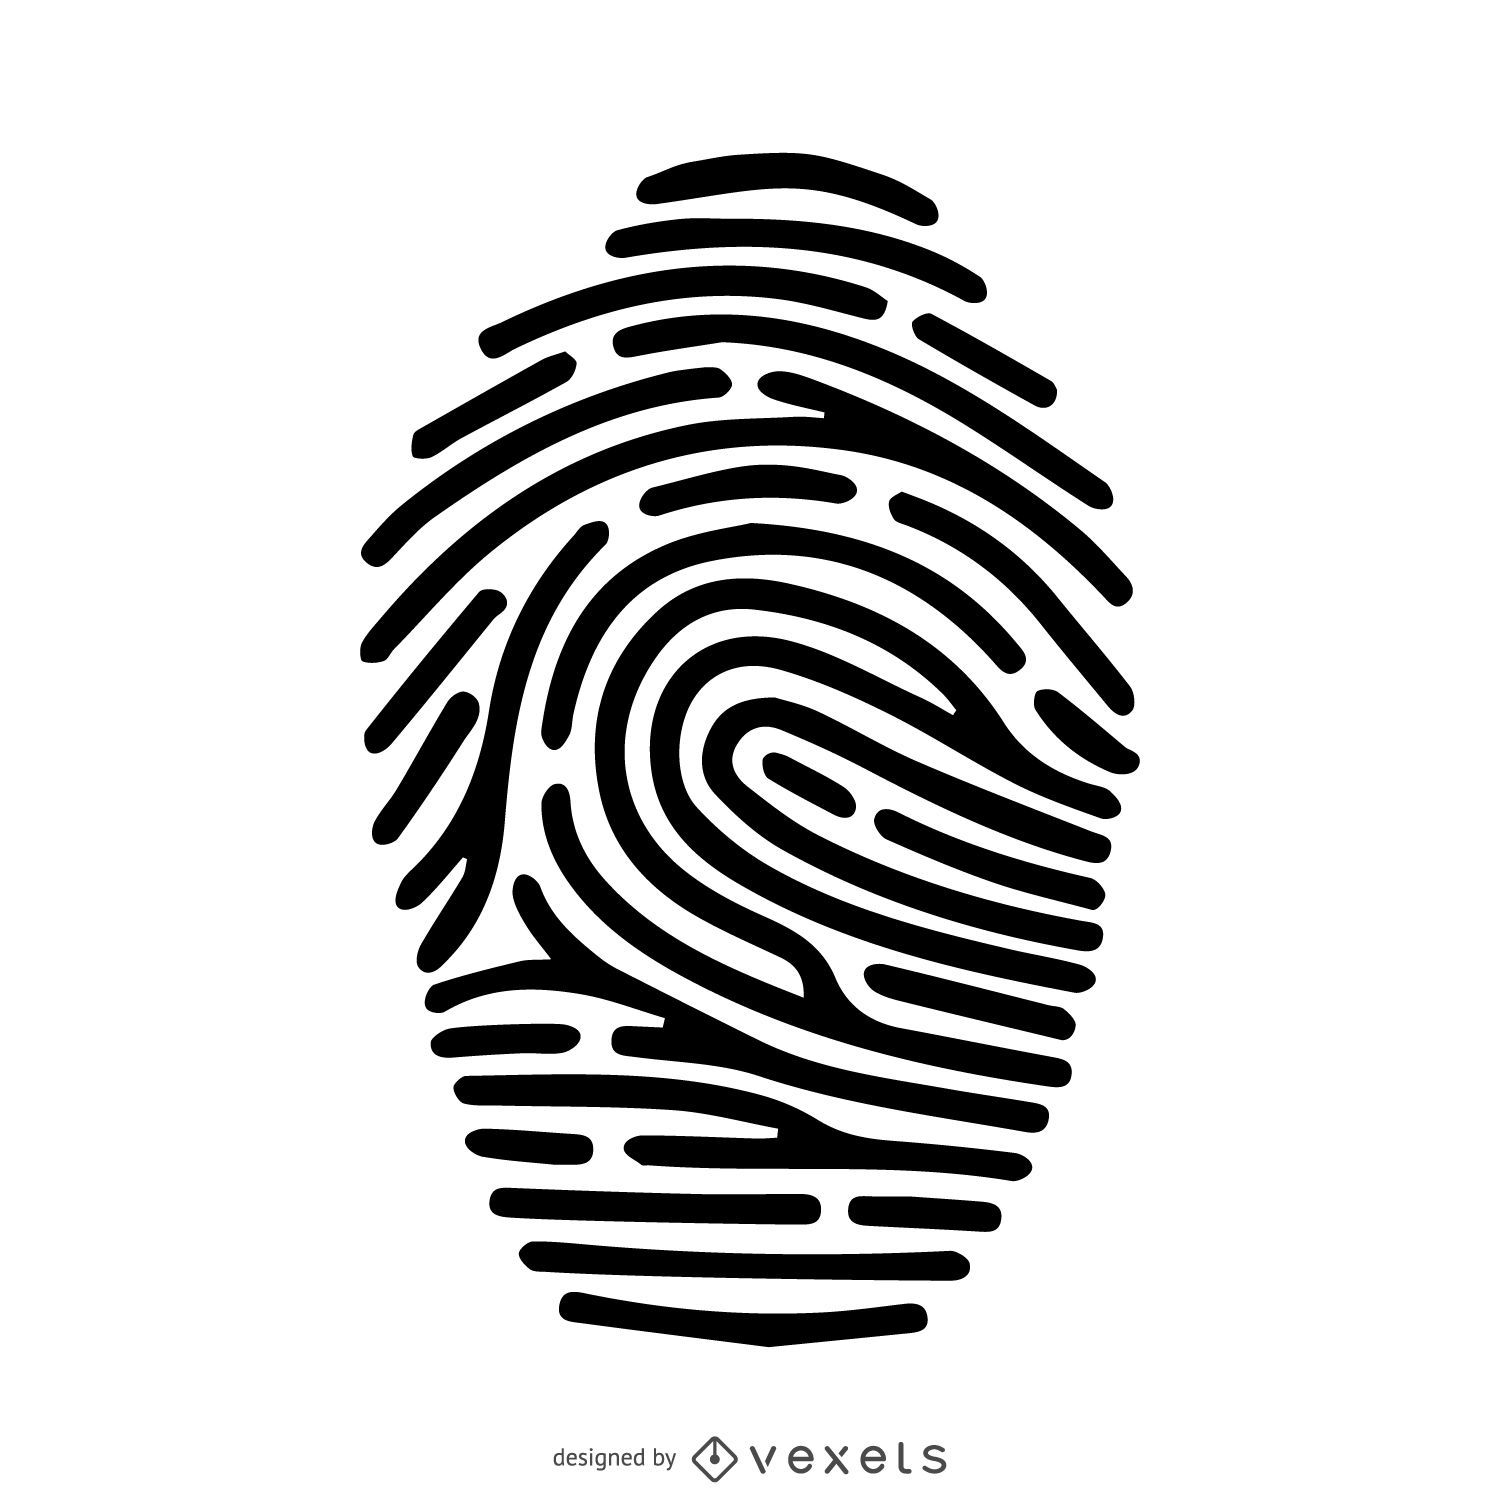 Fingerprint silhouette stroke illustration